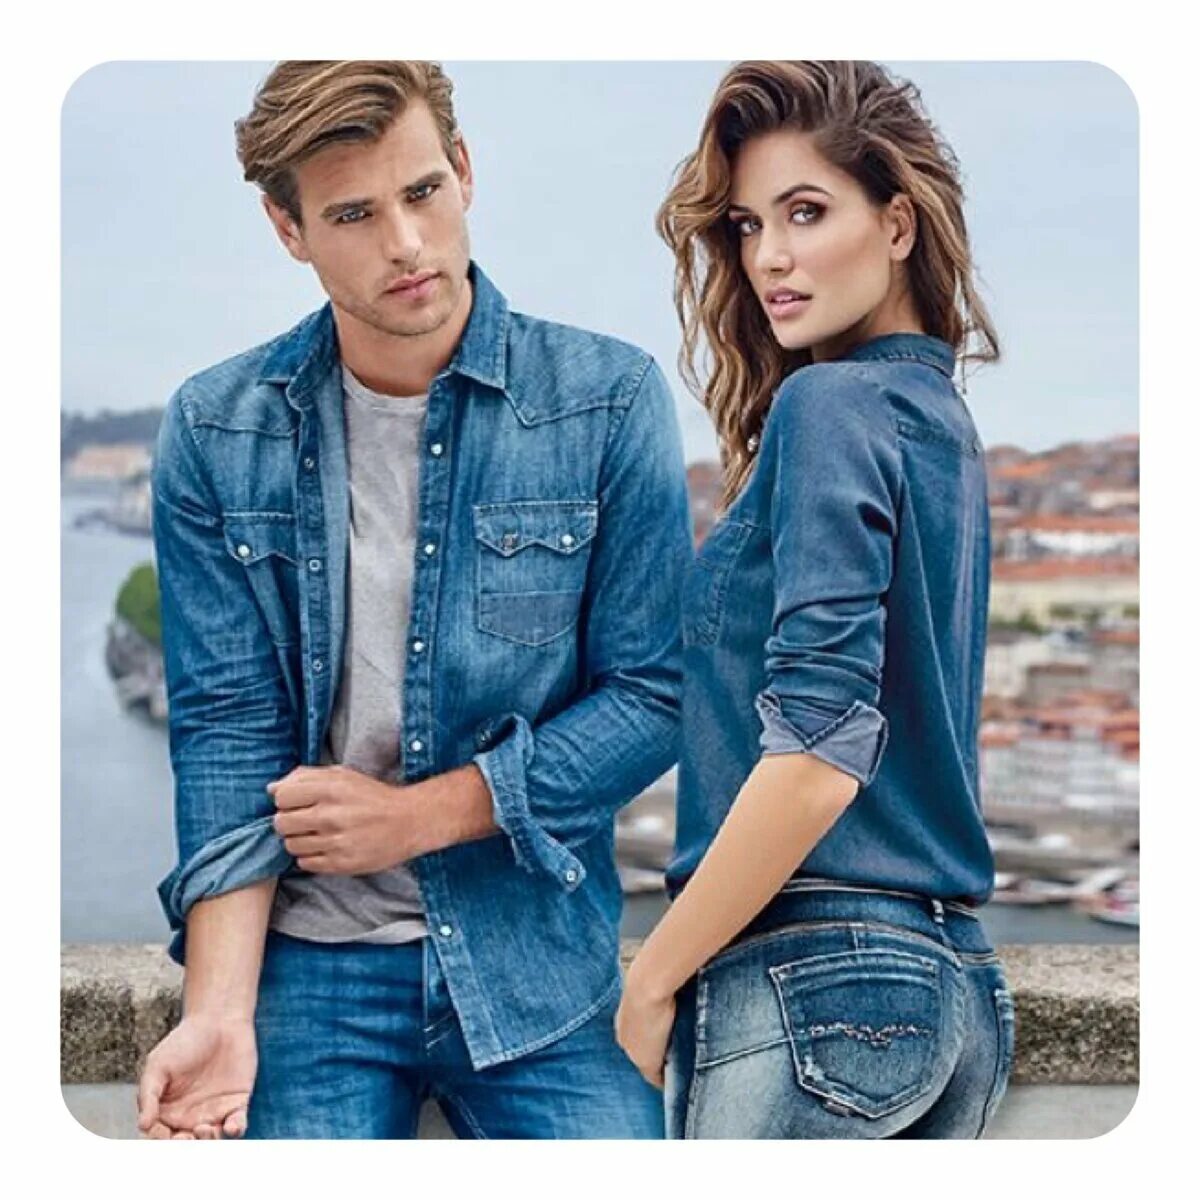 Реклама джинсов. Реклама джинсовой одежды. Пара в джинсовой одежде. Красивые стильные пары.